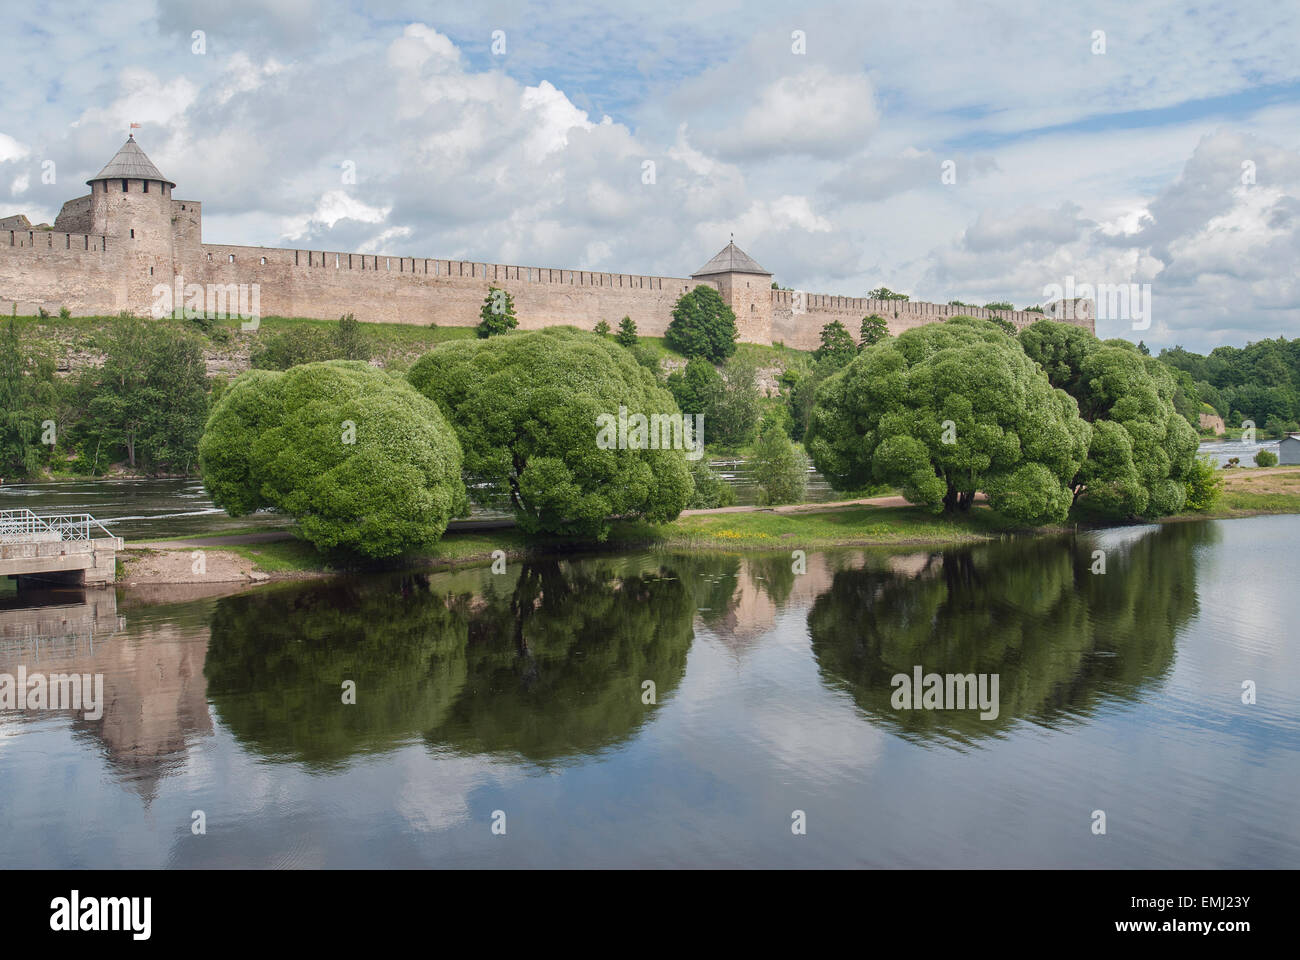 La forteresse Ivangorod en Fédération de Russie, la ville frontière avec l'Estonie sur la banque du fleuve Narva Banque D'Images